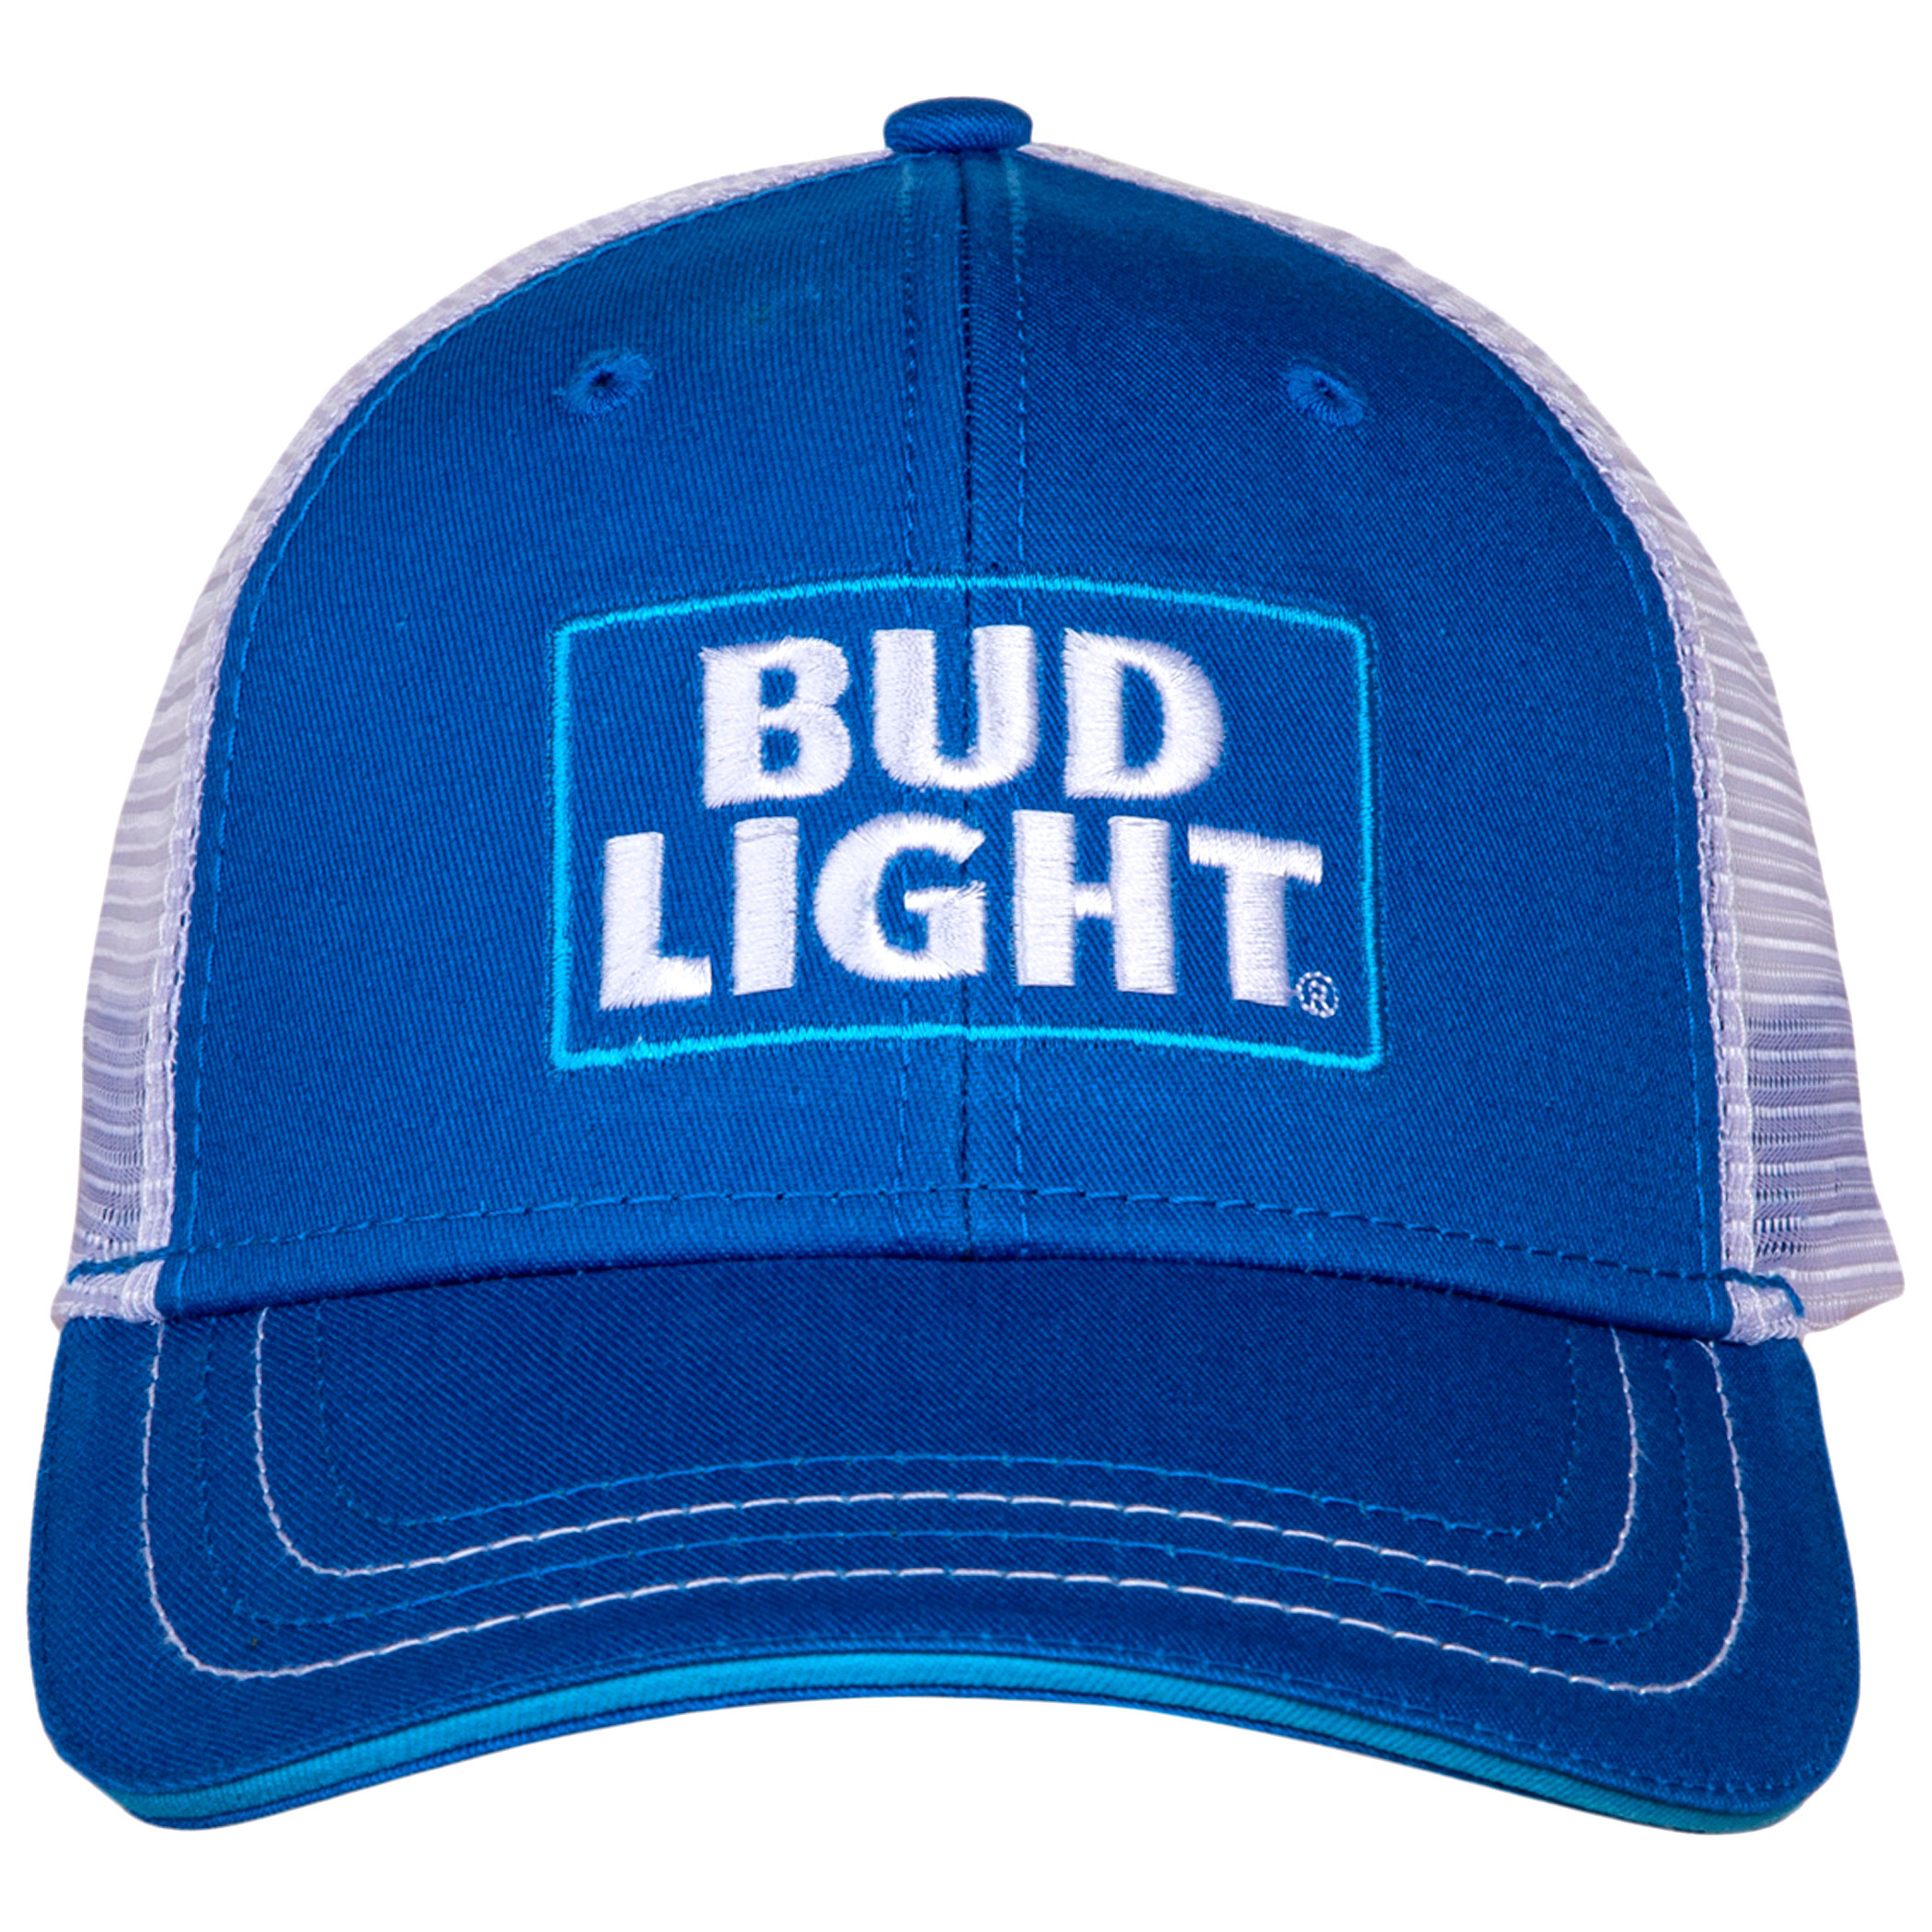 New Licensed Budweiser Beer Bud Light Beer Man Embroidered 3D  Adjustable Hat BA 